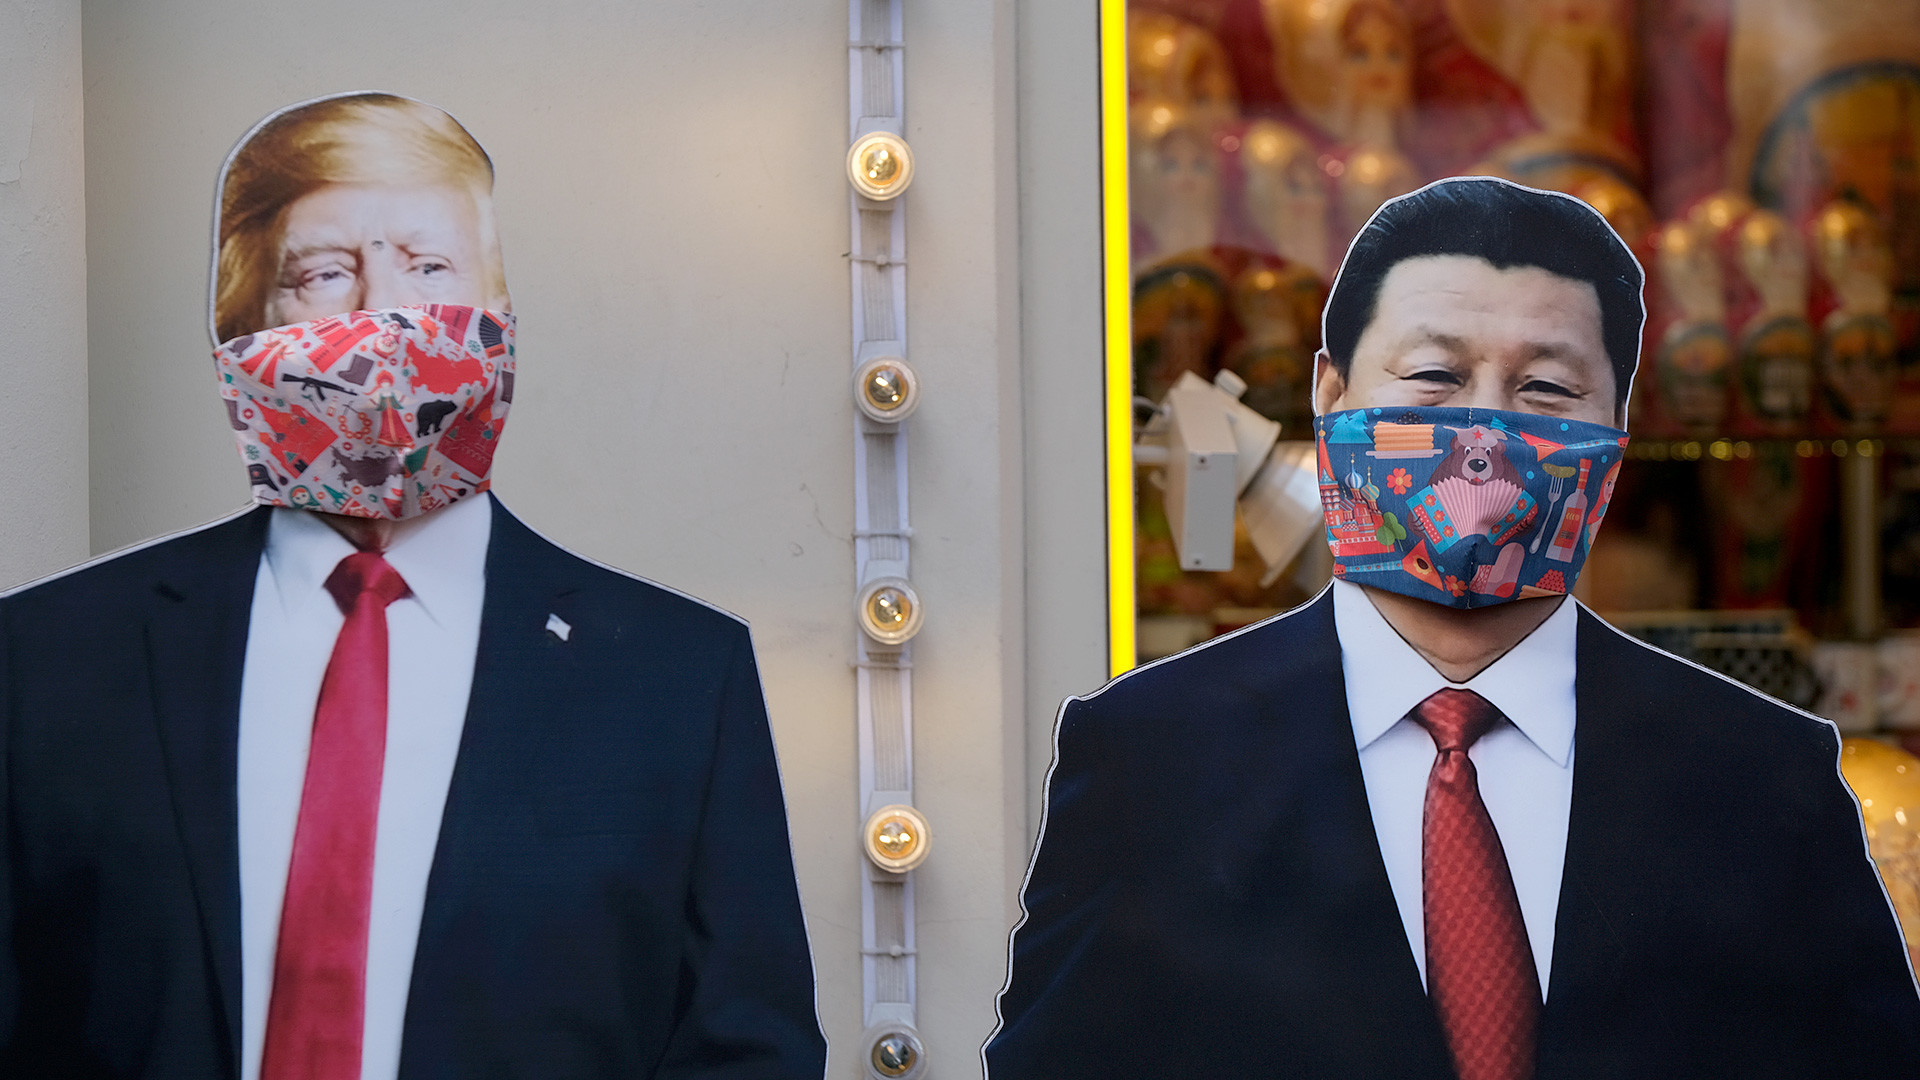 Искројене картонске фотографије америчког председника Доналда Трампа и кинеског лидера Си Ђинпинга са маскама које се користе као превентива против заразе корона вирусом (COVID-19) испред продавнице сувенира у Москви, Русија, 23. март 2020.